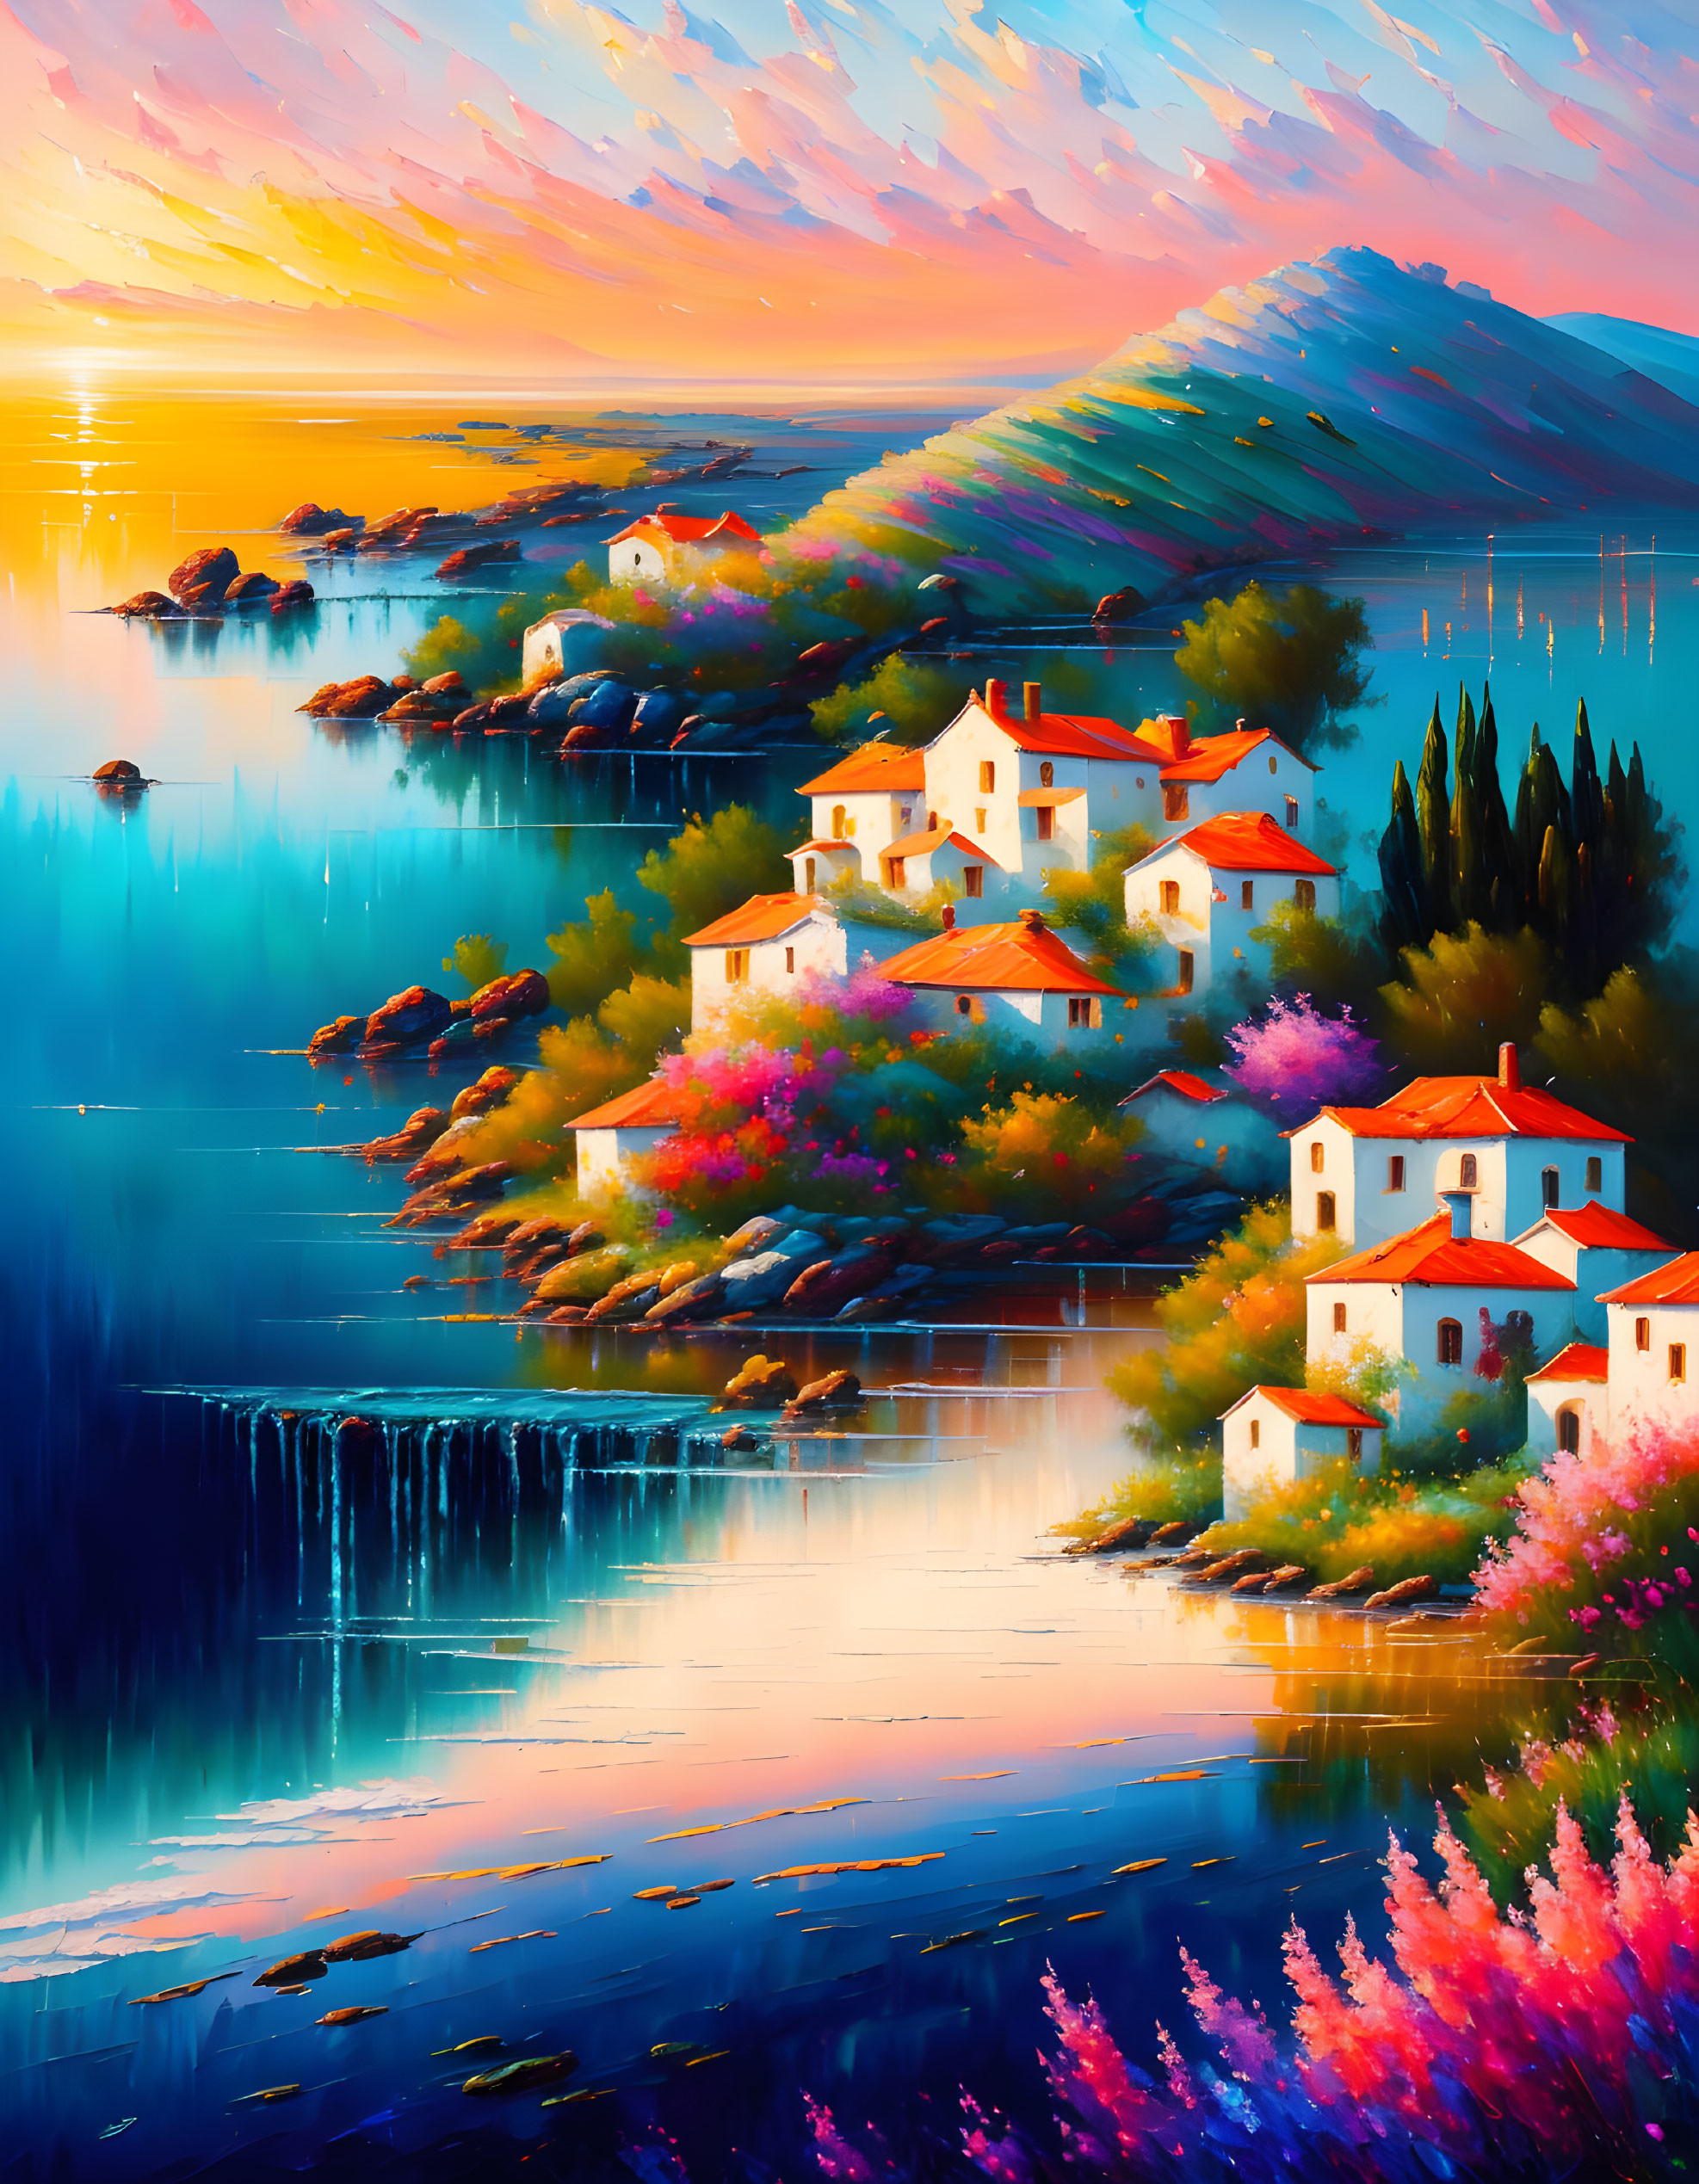 A colorful village